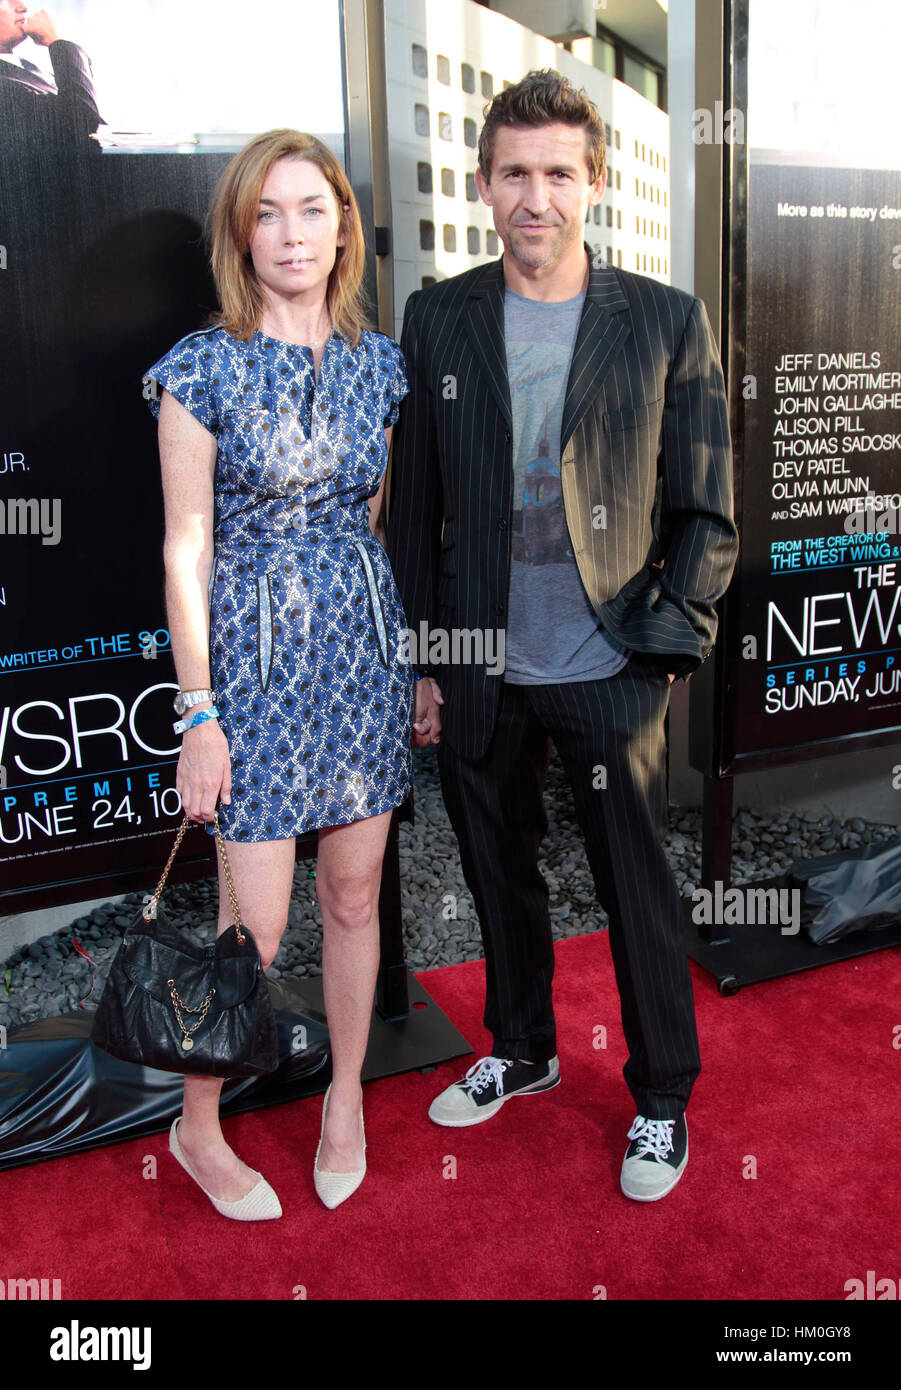 Julianne Nicholson und Jonathan Cake kommen bei der Premiere für die HBO-Serie "The Newsroom" in Hollywood, Kalifornien, am 20. Juni 2012. Foto von Francis Specker Stockfoto